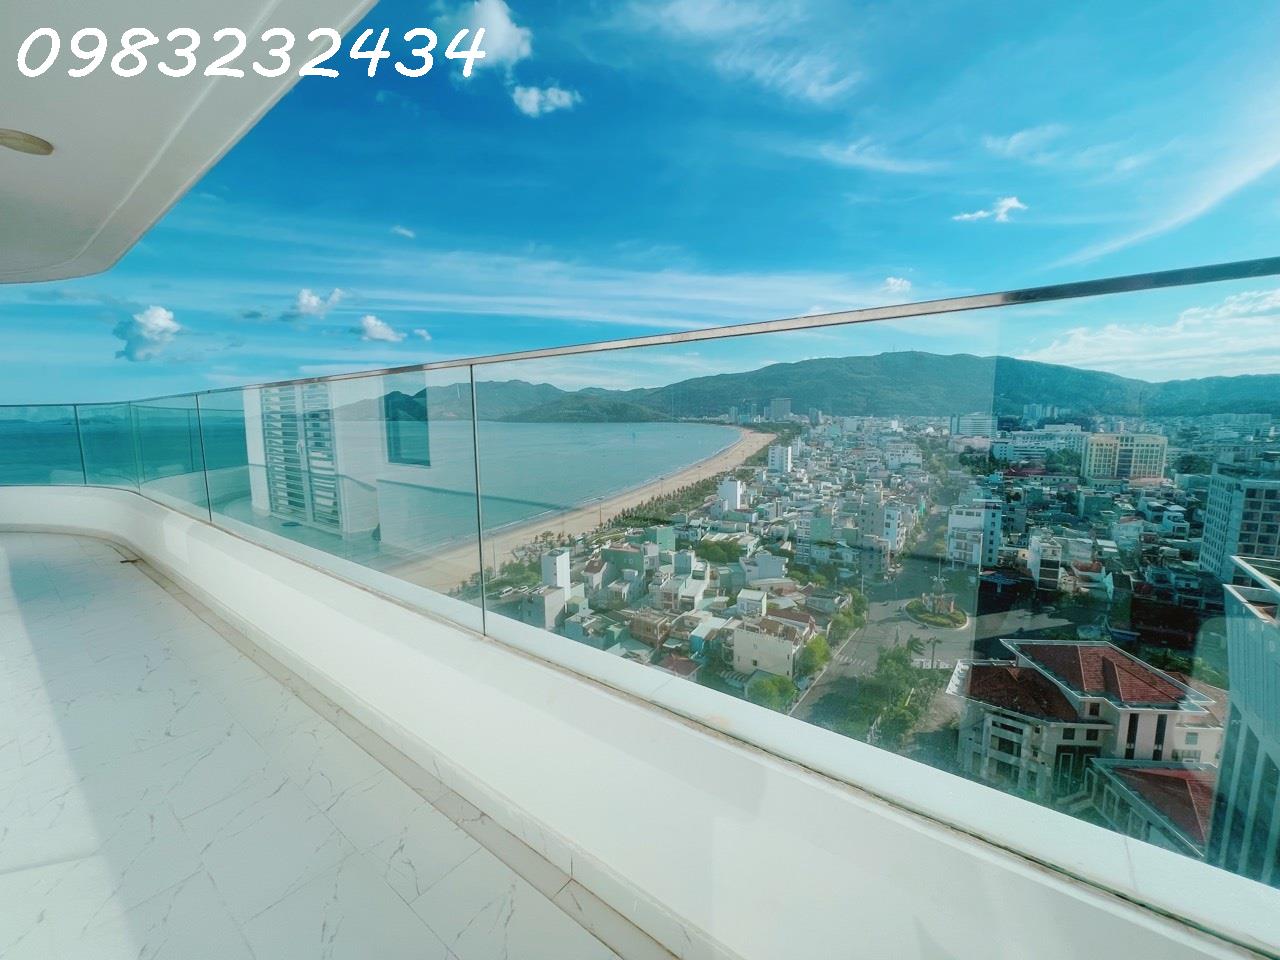 Bán căn hộ mặt biển TMS Luxury Hotel tại 29 Nguyễn Huệ, Thành phố Quy Nhơn, Bình Định - Ảnh 3